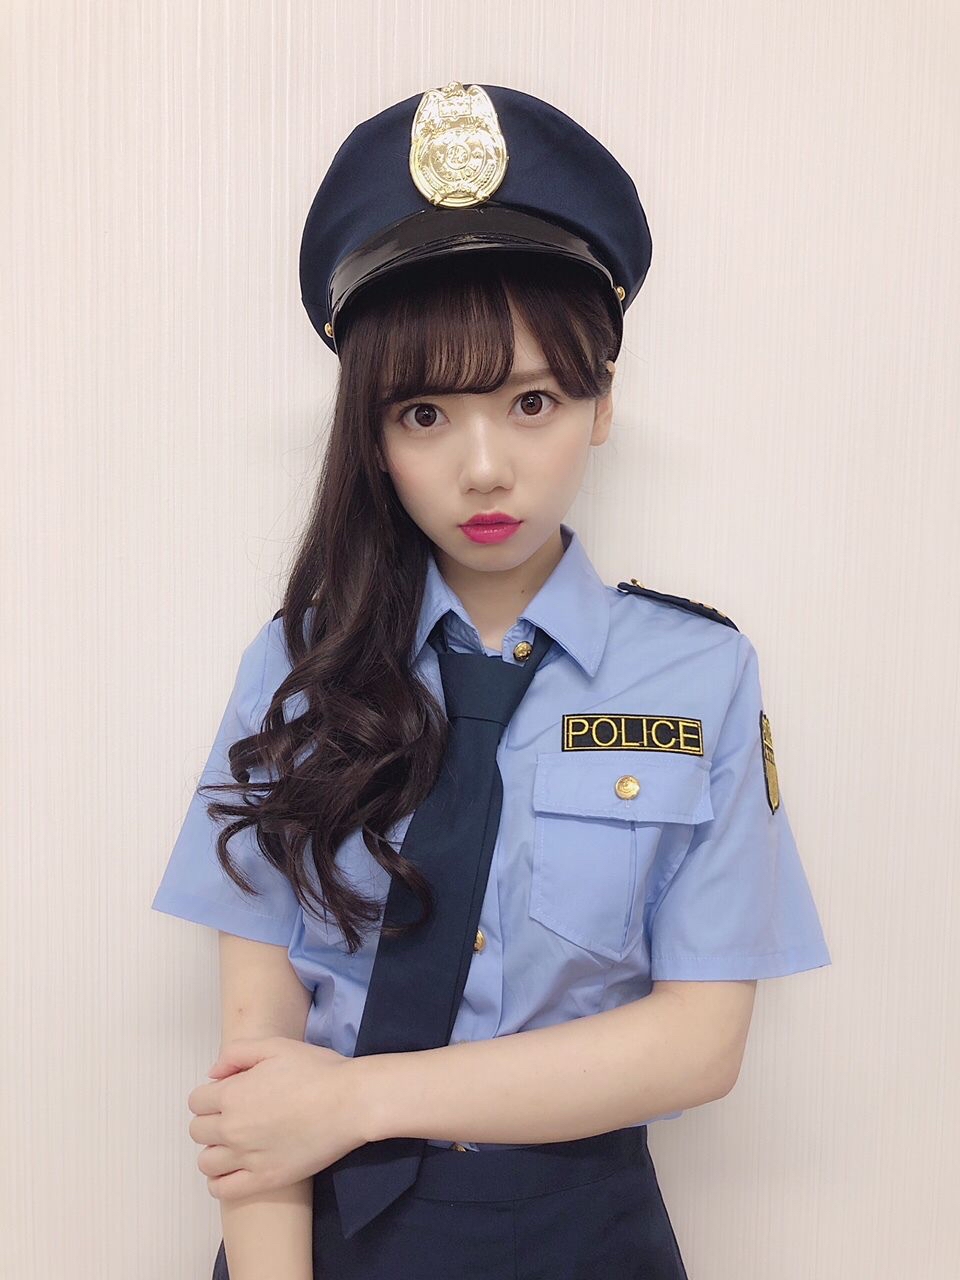 【画像】この婦警さんに「もう、いい加減にしないと逮捕しちゃいますよ？」て言われたらどうする？ｗｗ